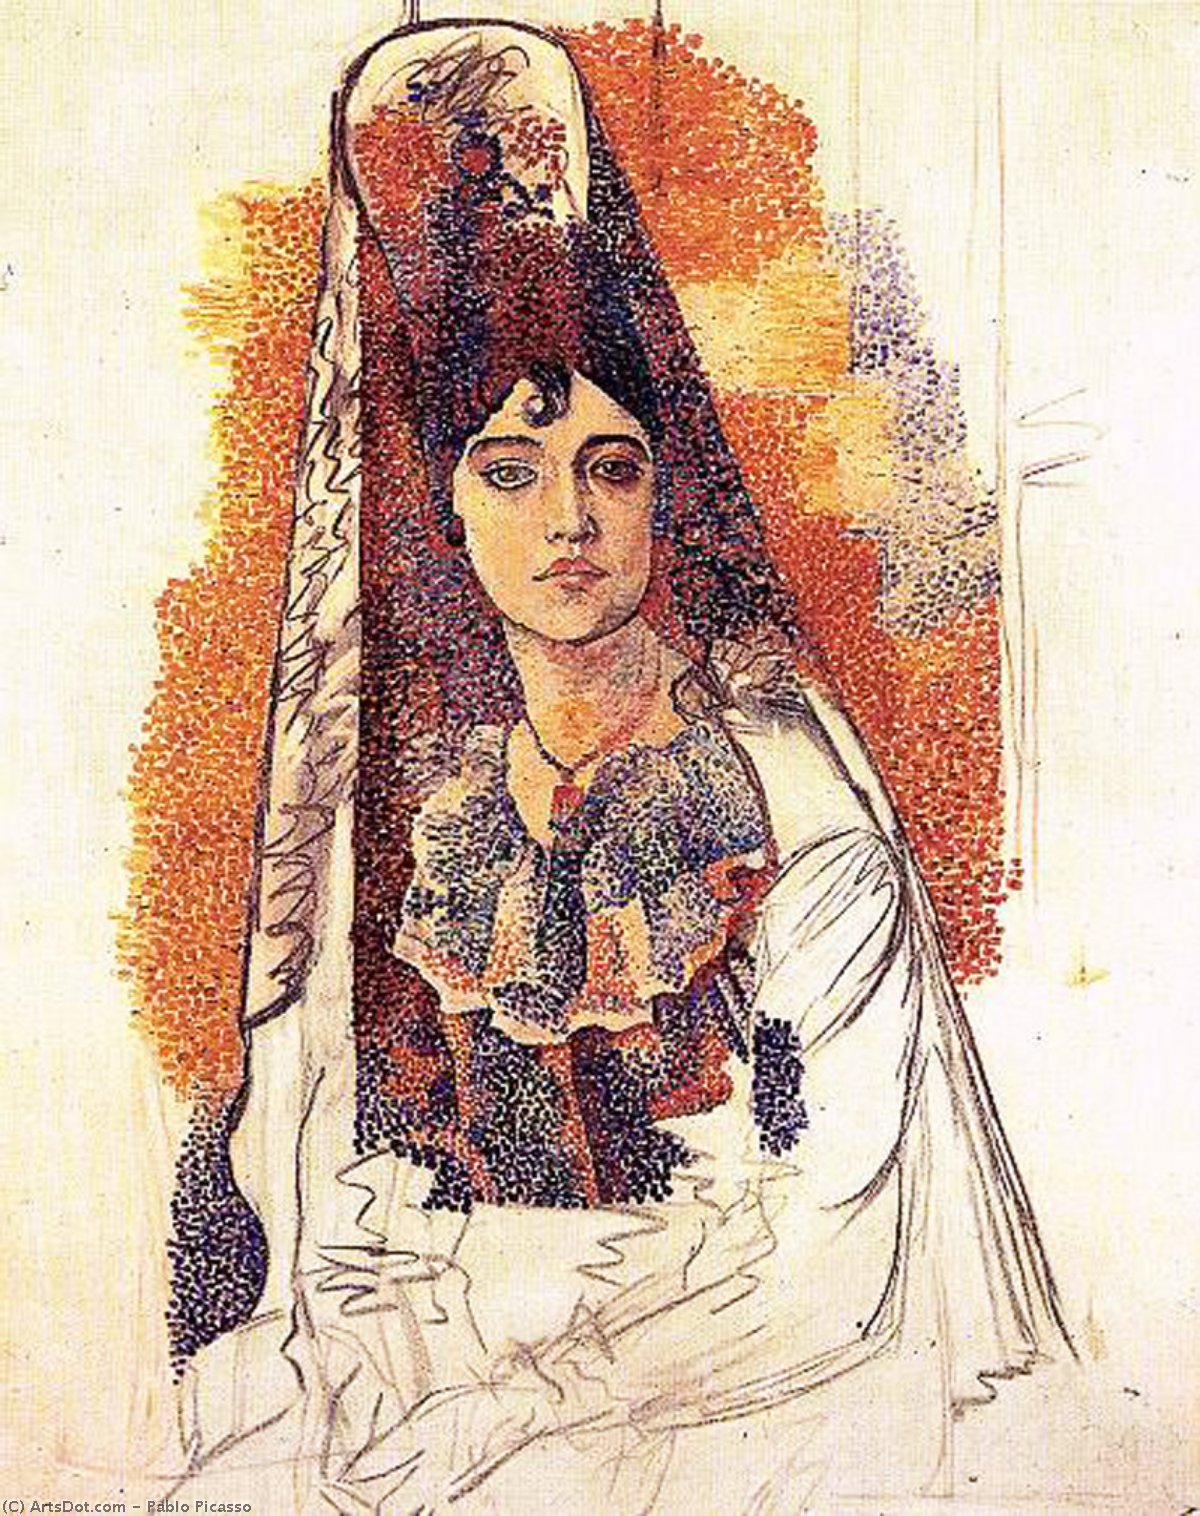 WikiOO.org - 백과 사전 - 회화, 삽화 Pablo Picasso - Femme en tenue espagnole